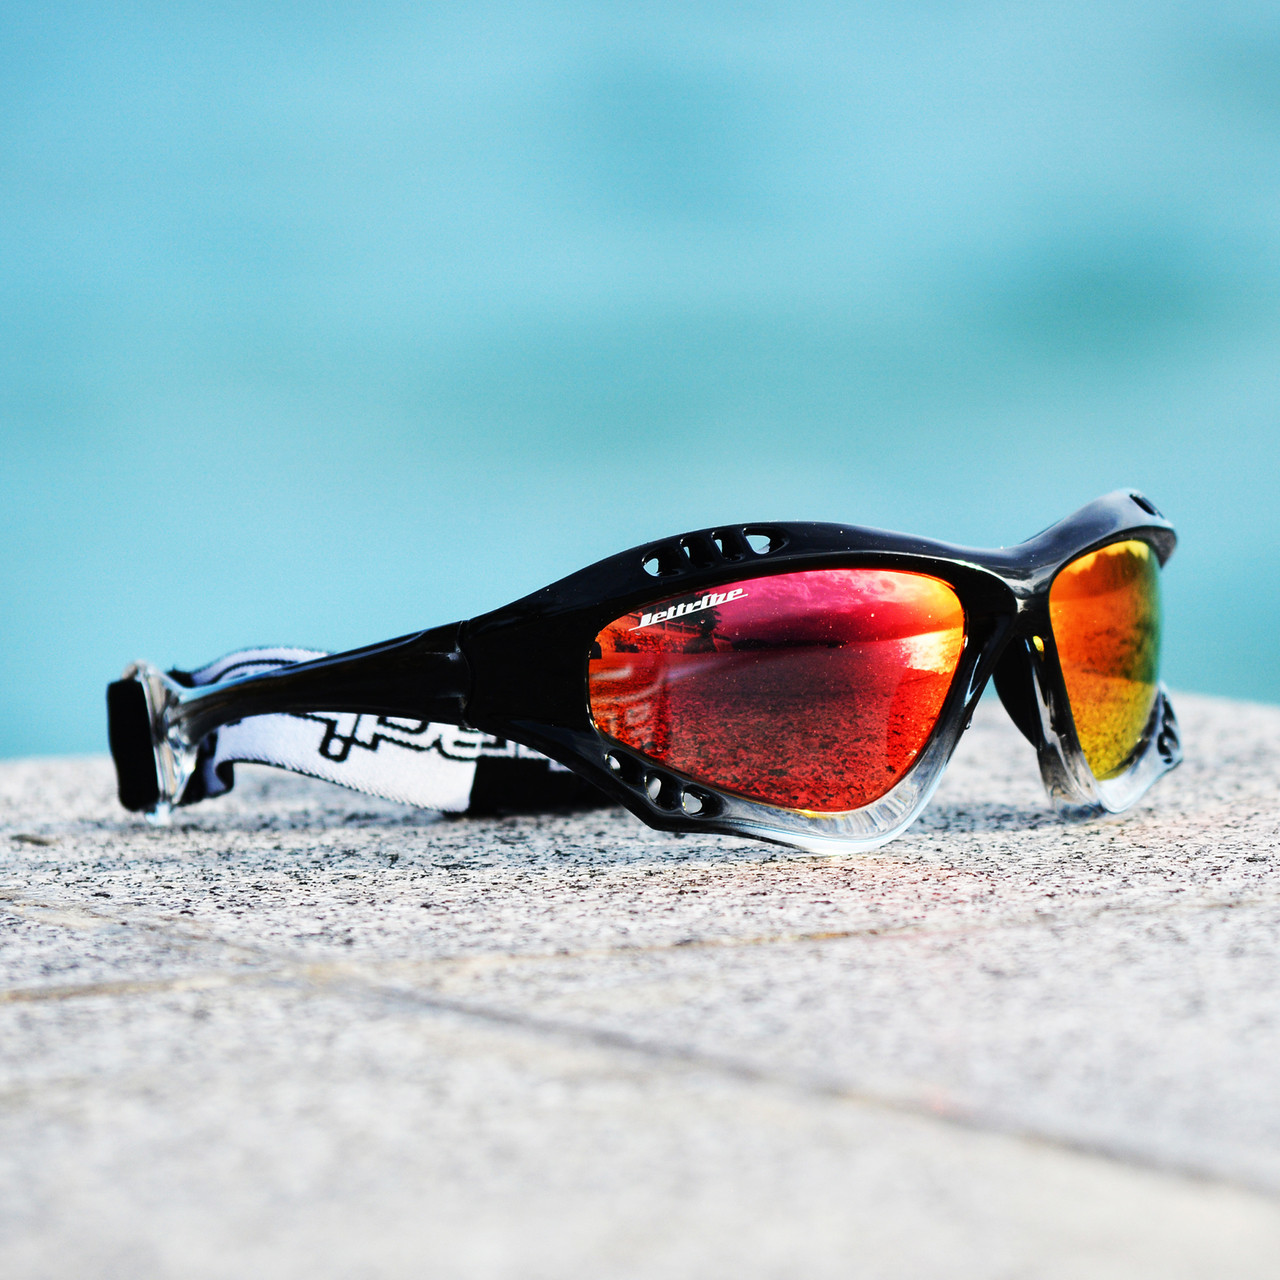 jettribe pro goggles black fade framerevo lens sunglasses pwc jetski racer 11289.1670102272